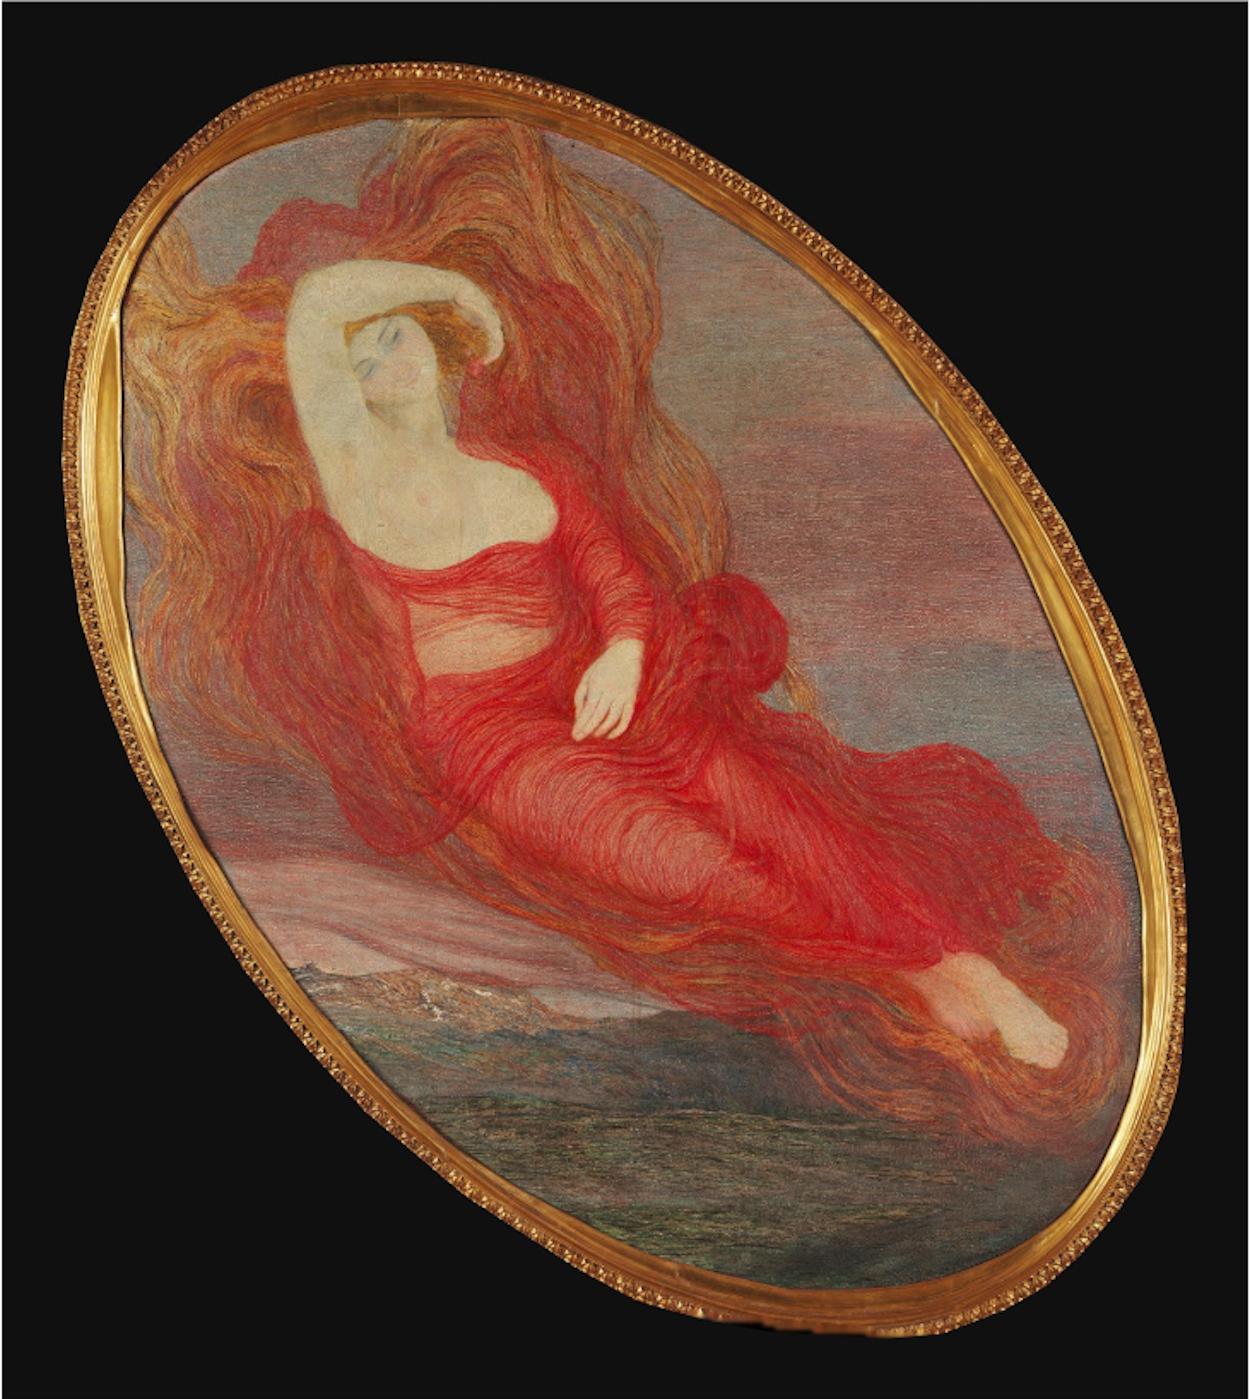 Zeița păgână sau zeița iubirii by Giovanni Segantini - 1894/1897 - 223 x 250 cm 